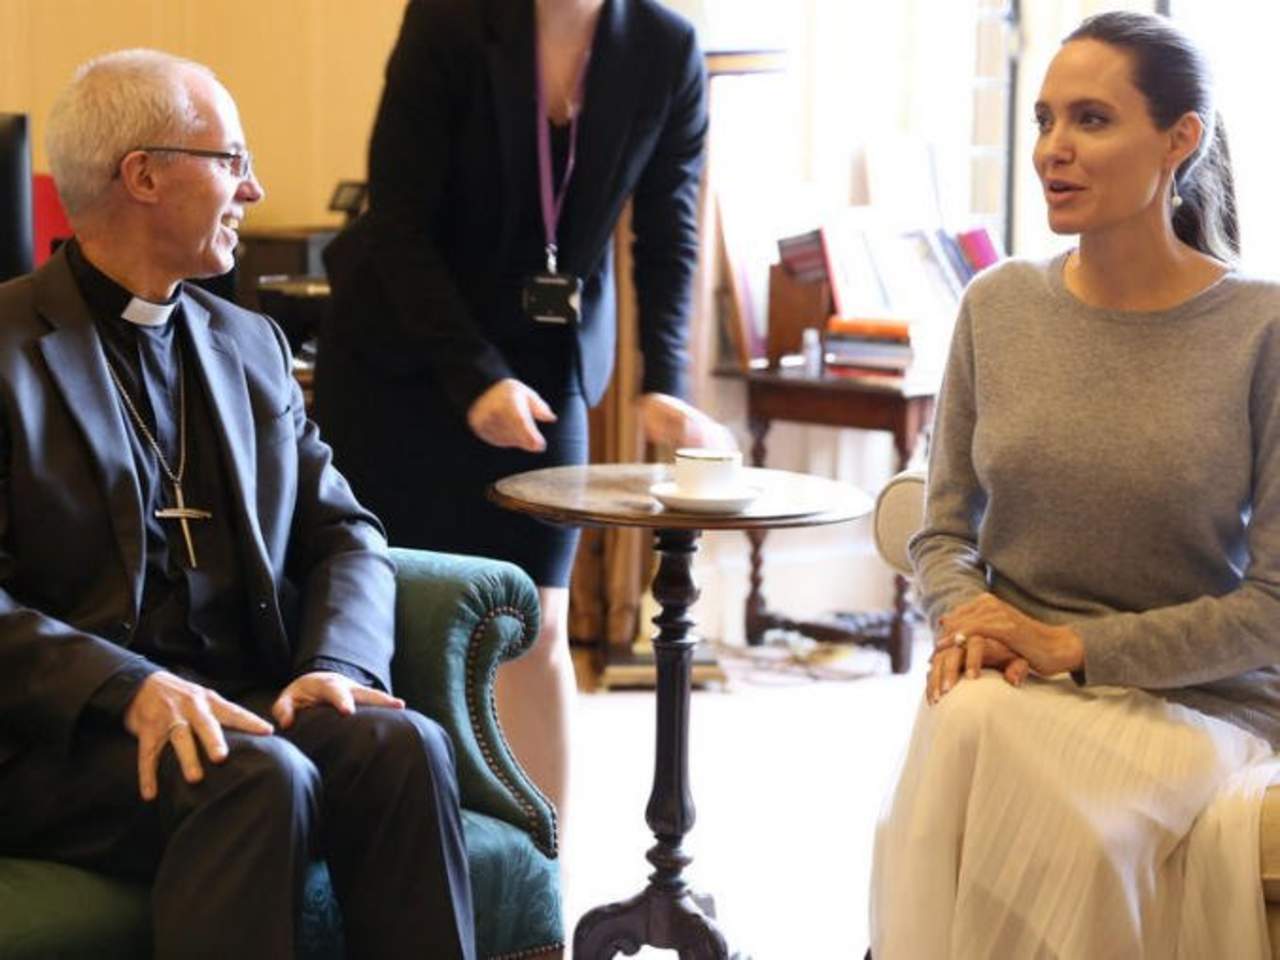 De acuerdo al portal ABC.es., la actriz y el religioso se reunieron para tomar el té y hablar sobre temas humanitarios como la crisis de los refugiados y la violencia sexual en Sudán. (TWITTER)